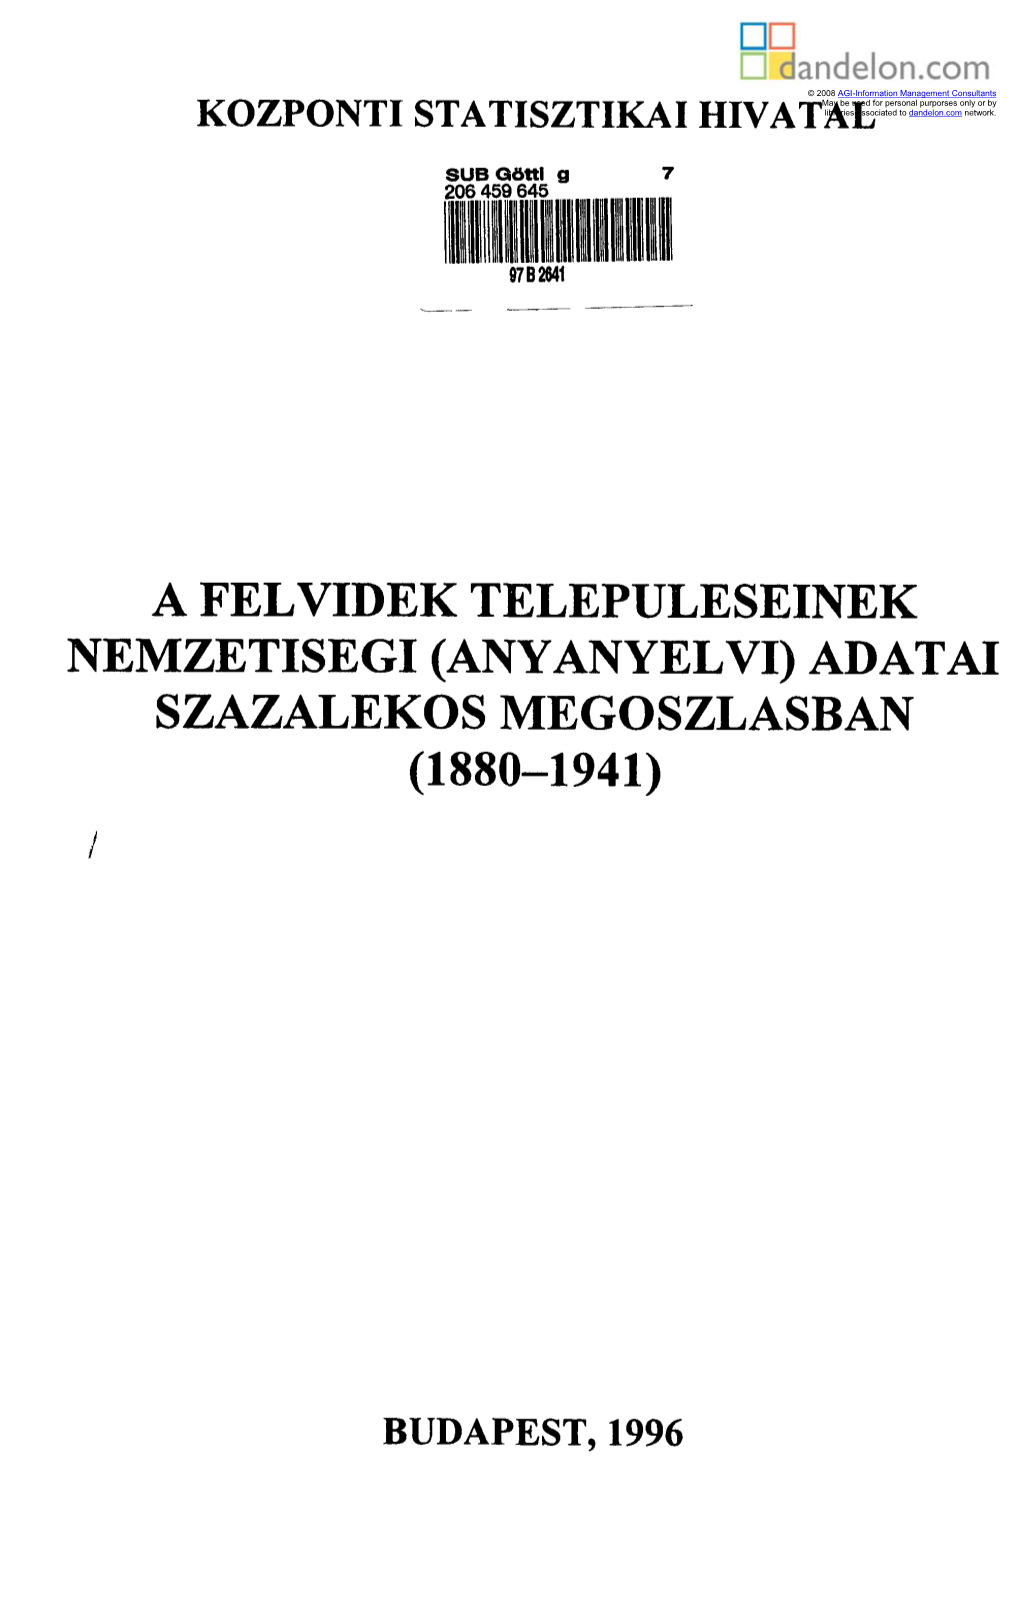 A Felvidék Településeinek Nemzetiségi (Anyanyelvi) Adatai Százalékos Megoszlásban (1880-1941)